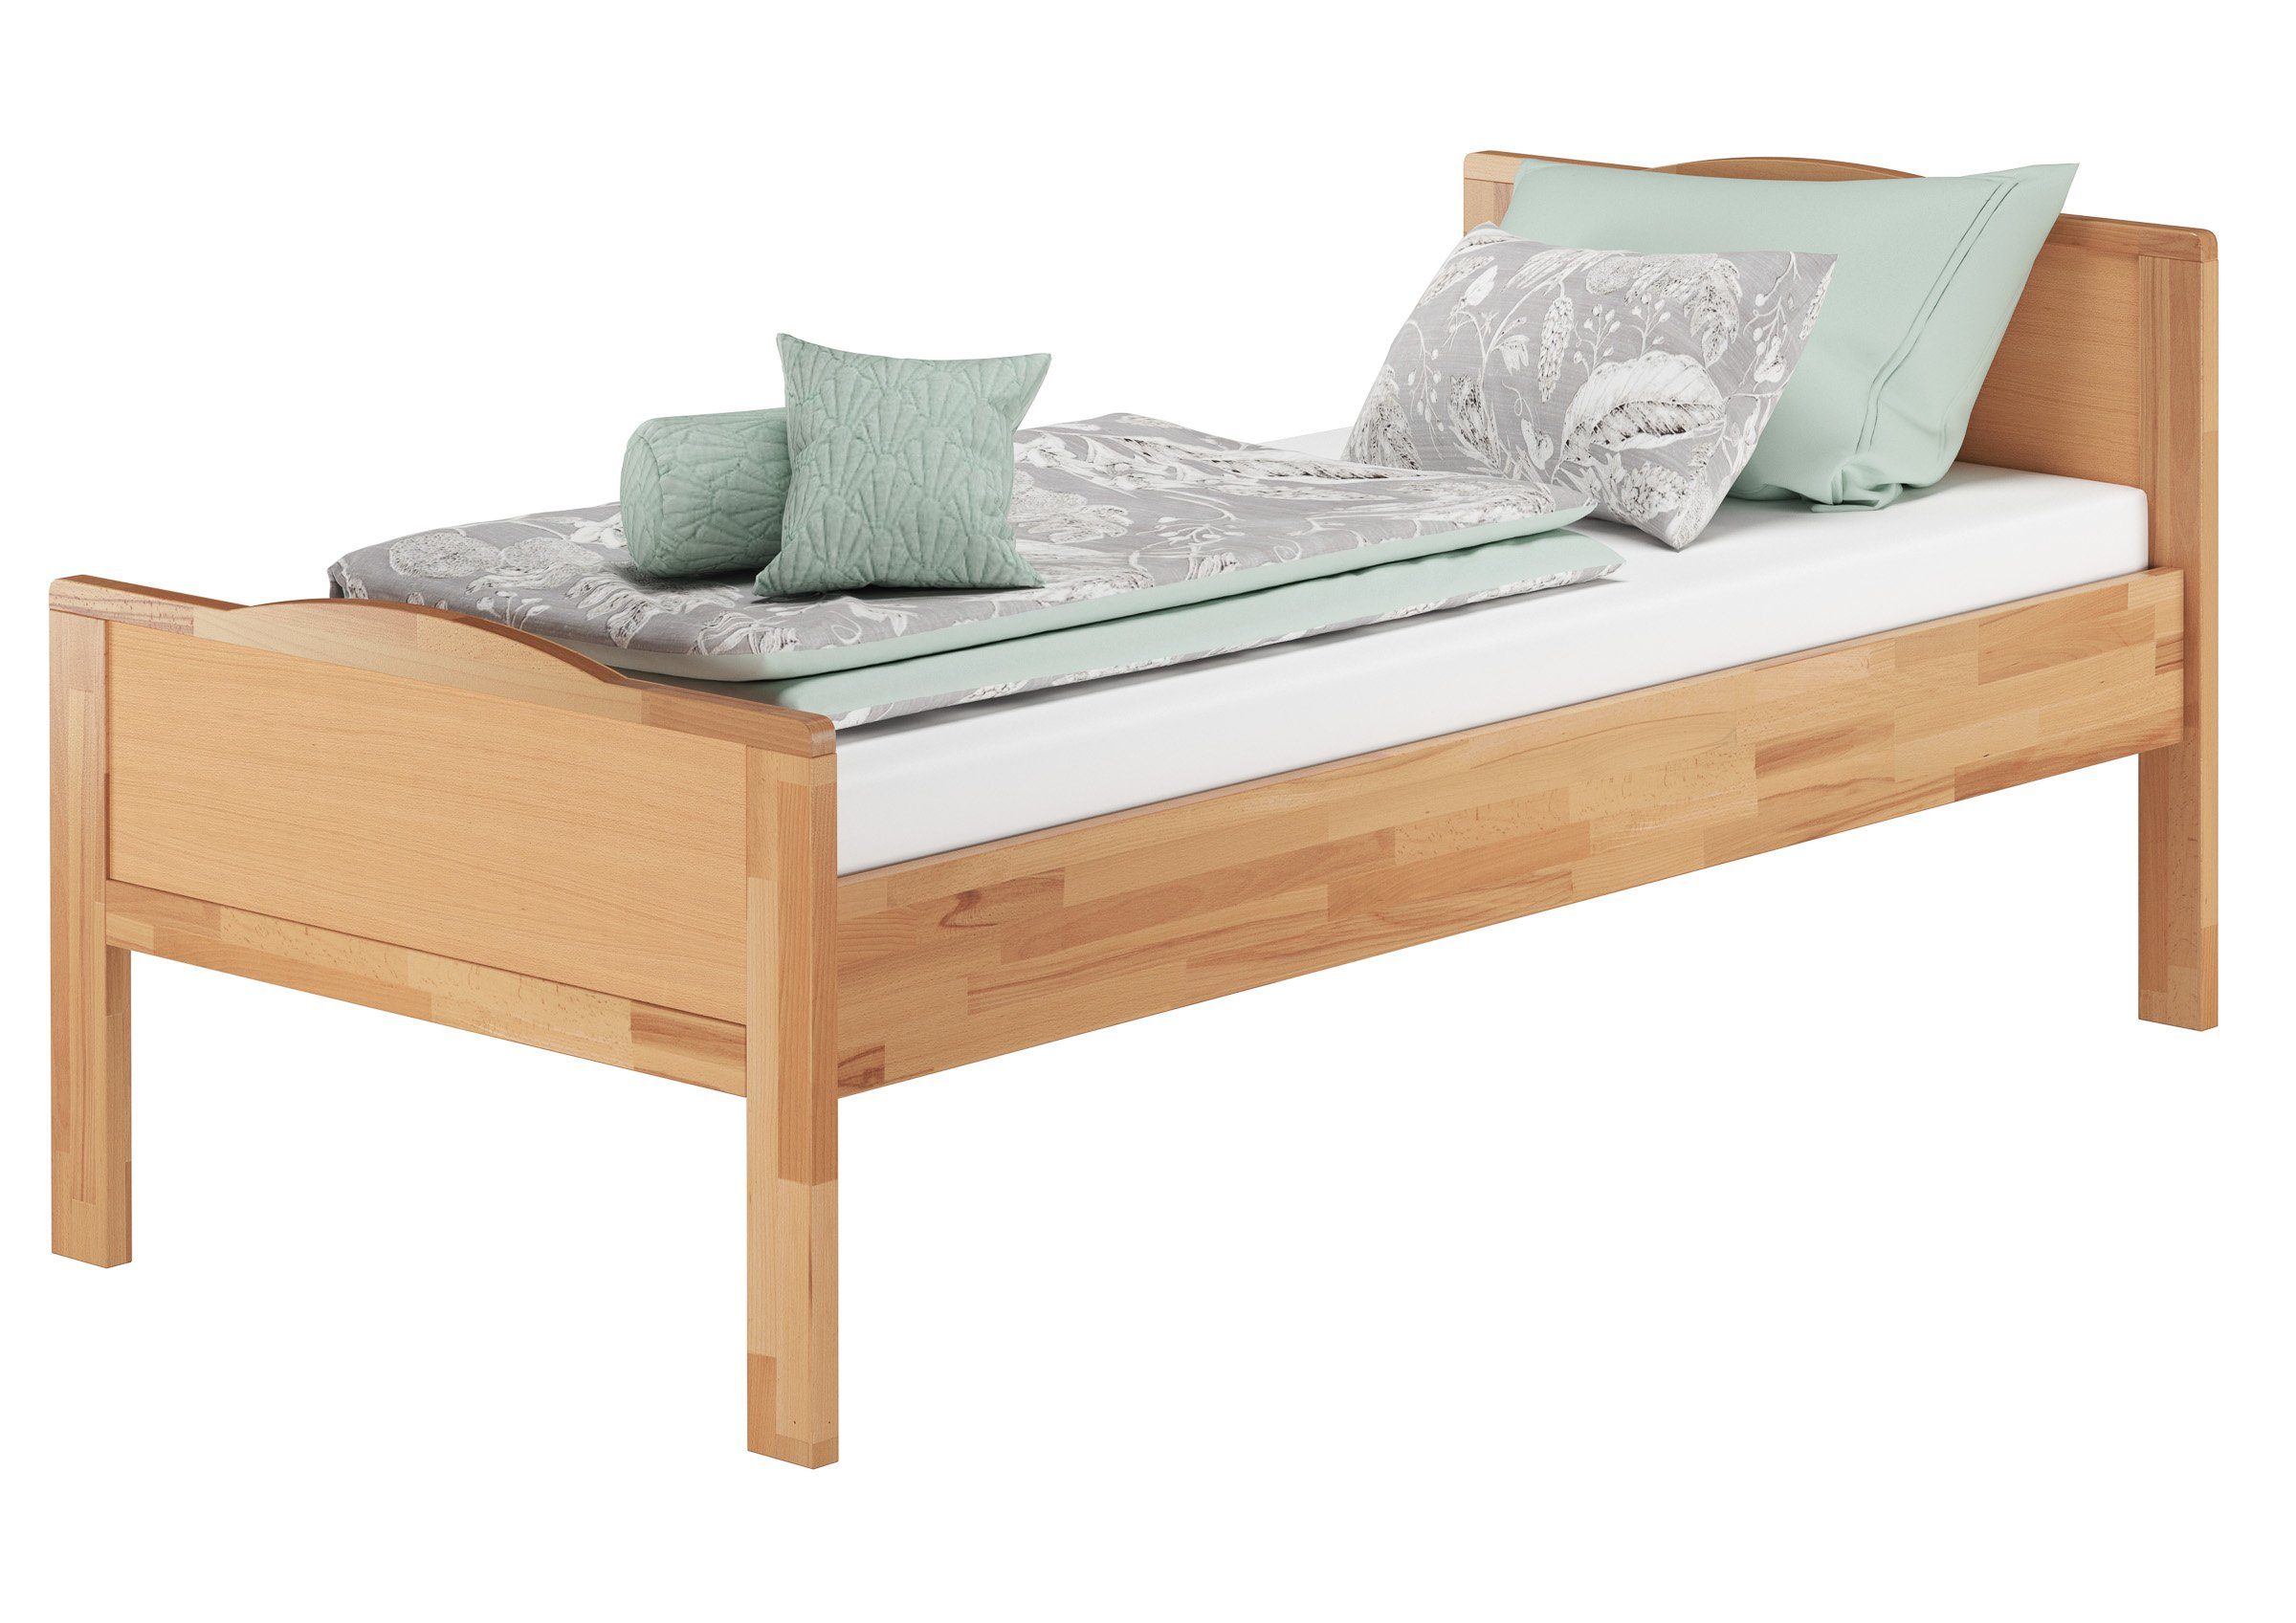 und Komplettset Einzelbett Bett Buchefarblos 100x200 ERST-HOLZ Buche Matratze, lackiert mit Federleisten